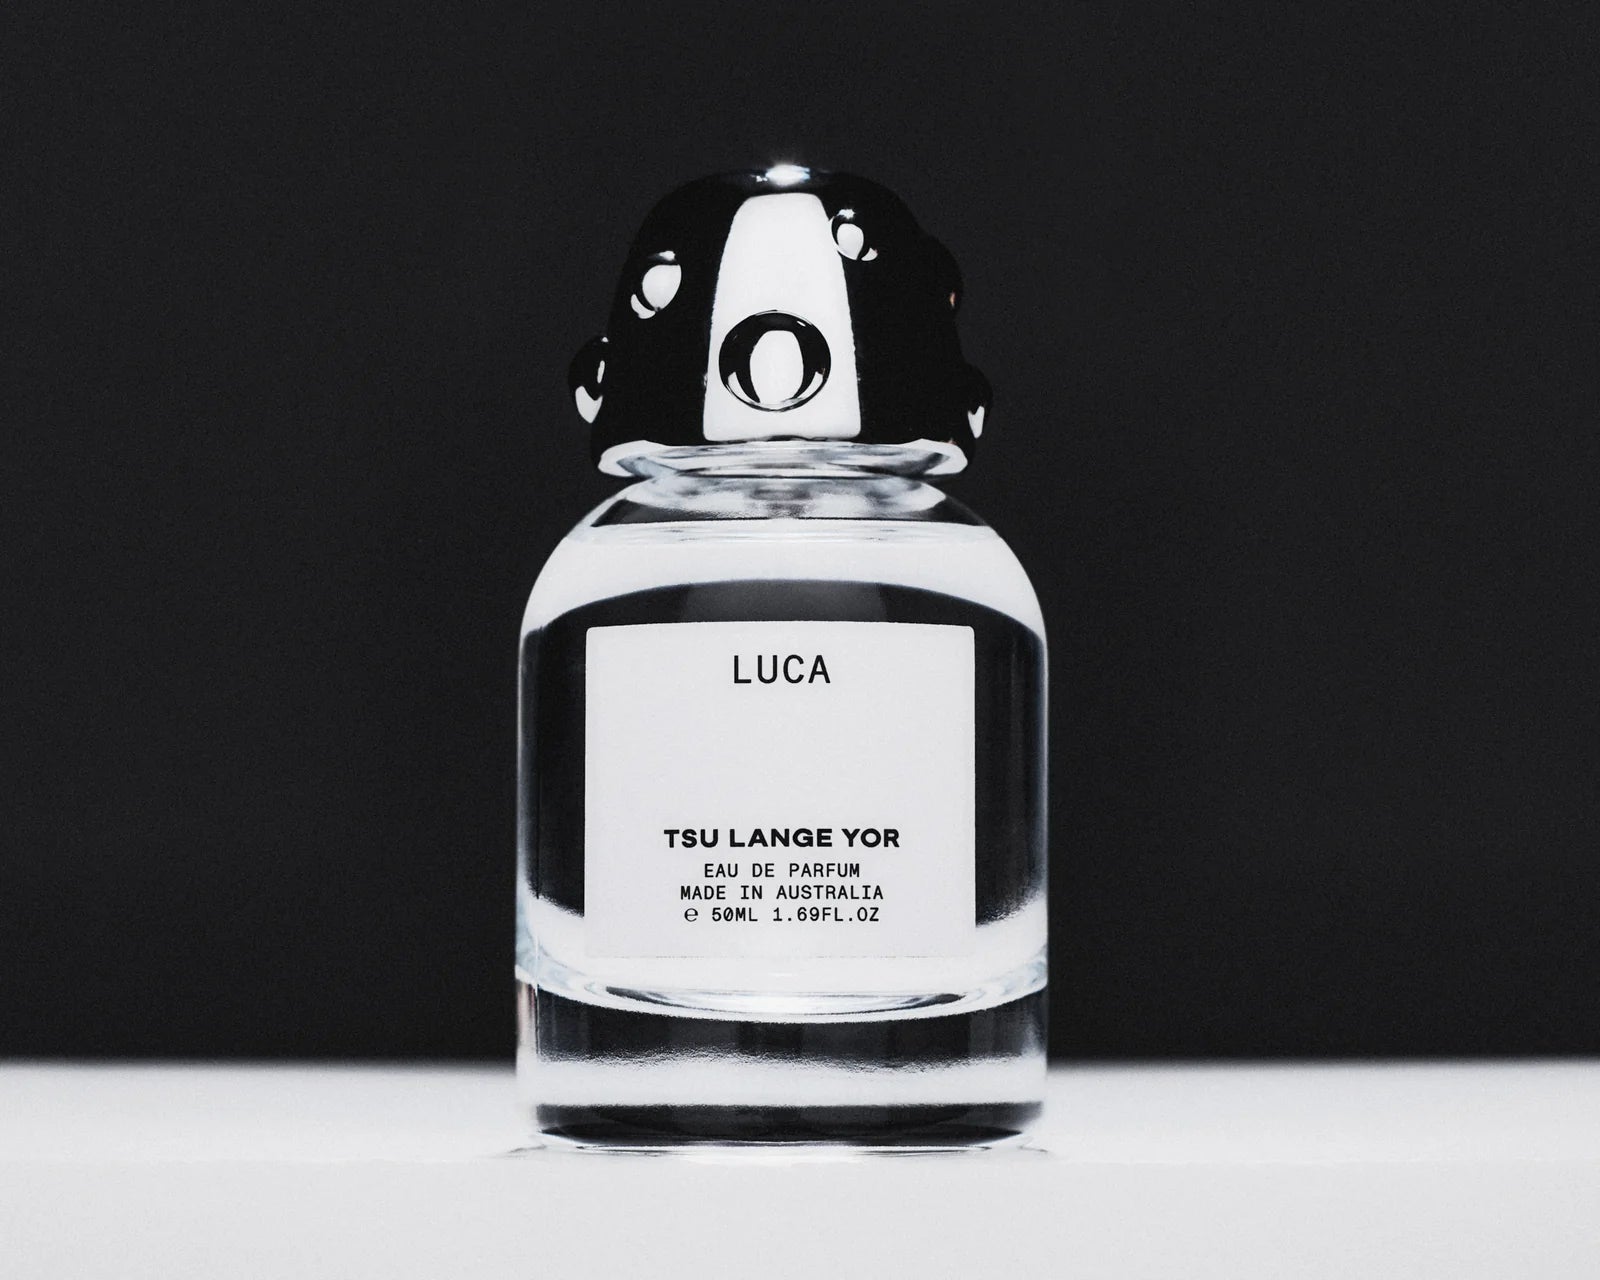 Tsu Lange Yor Luca Eau de Parfum - Stèle